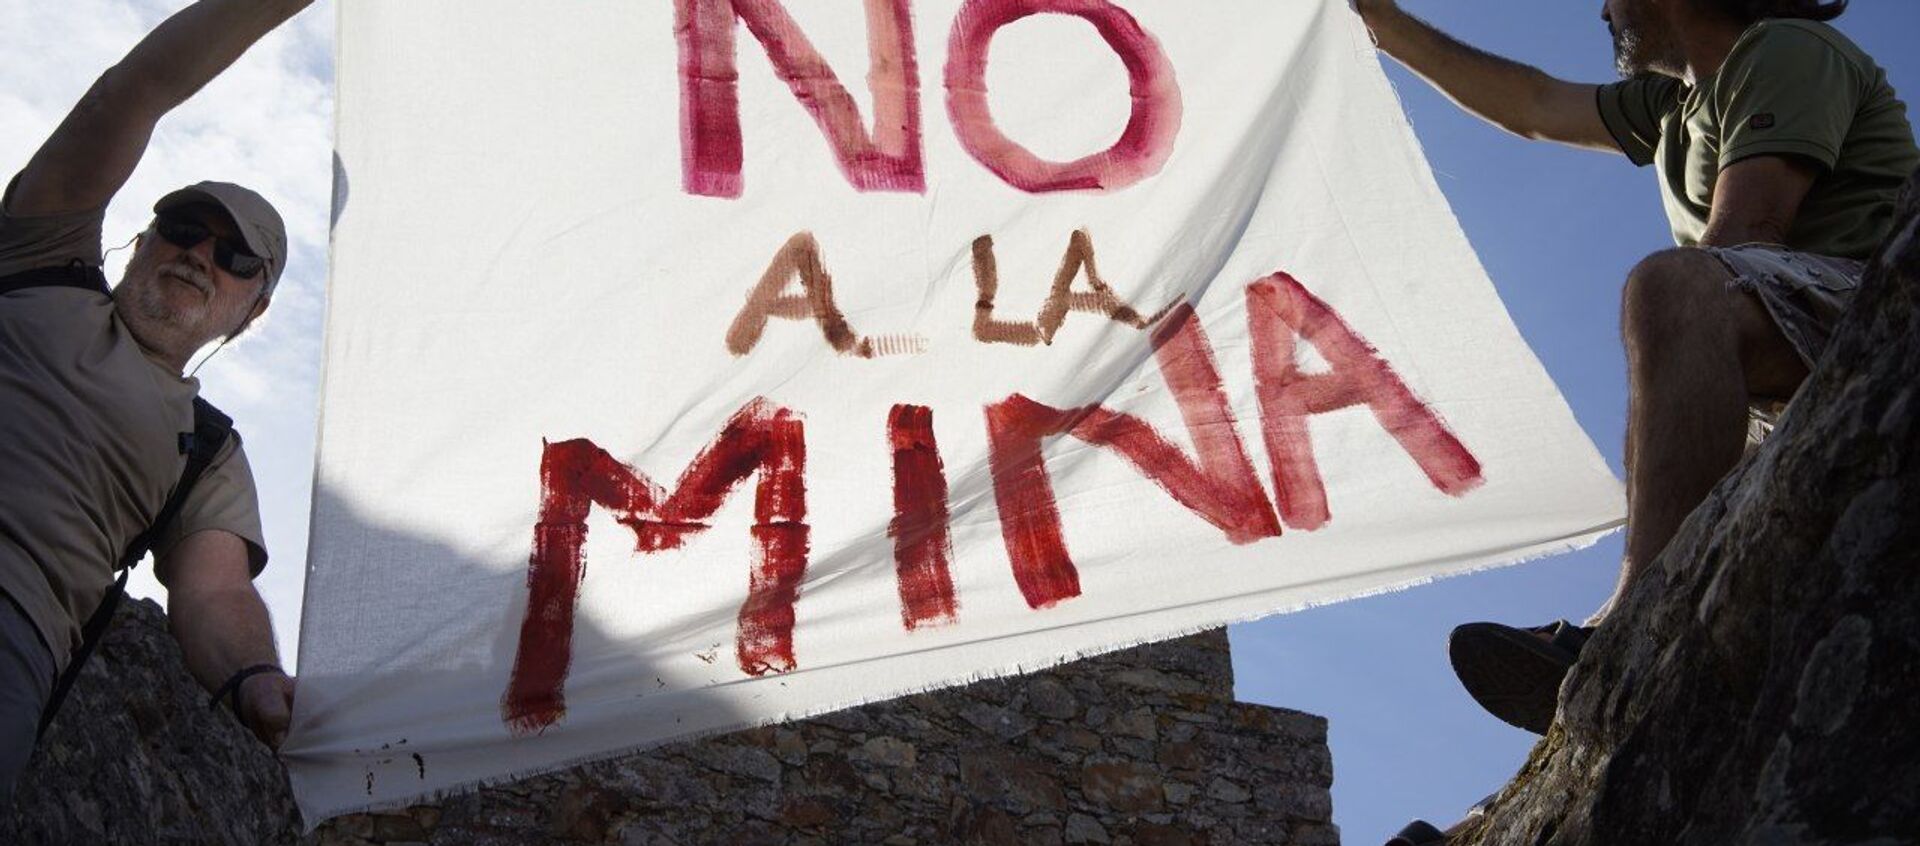 Cacereños protestan contra la explotación de la mina San José Valdeflórez - Sputnik Mundo, 1920, 04.06.2020